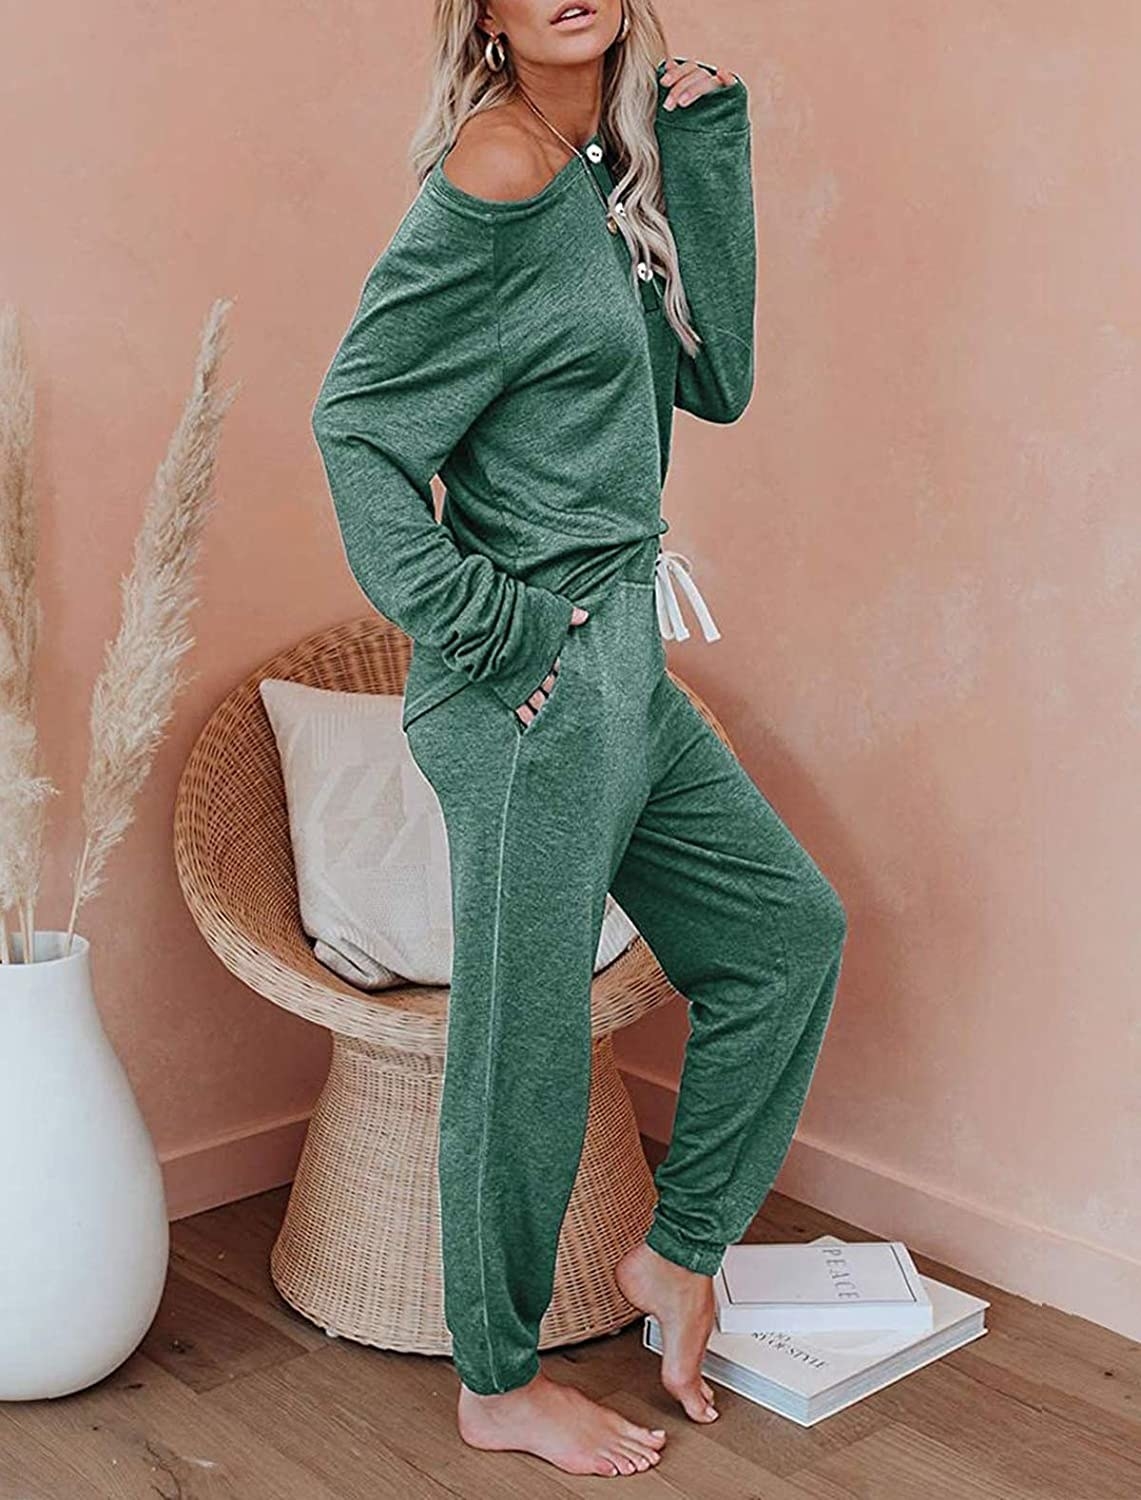 a model wearing the green loungewear set